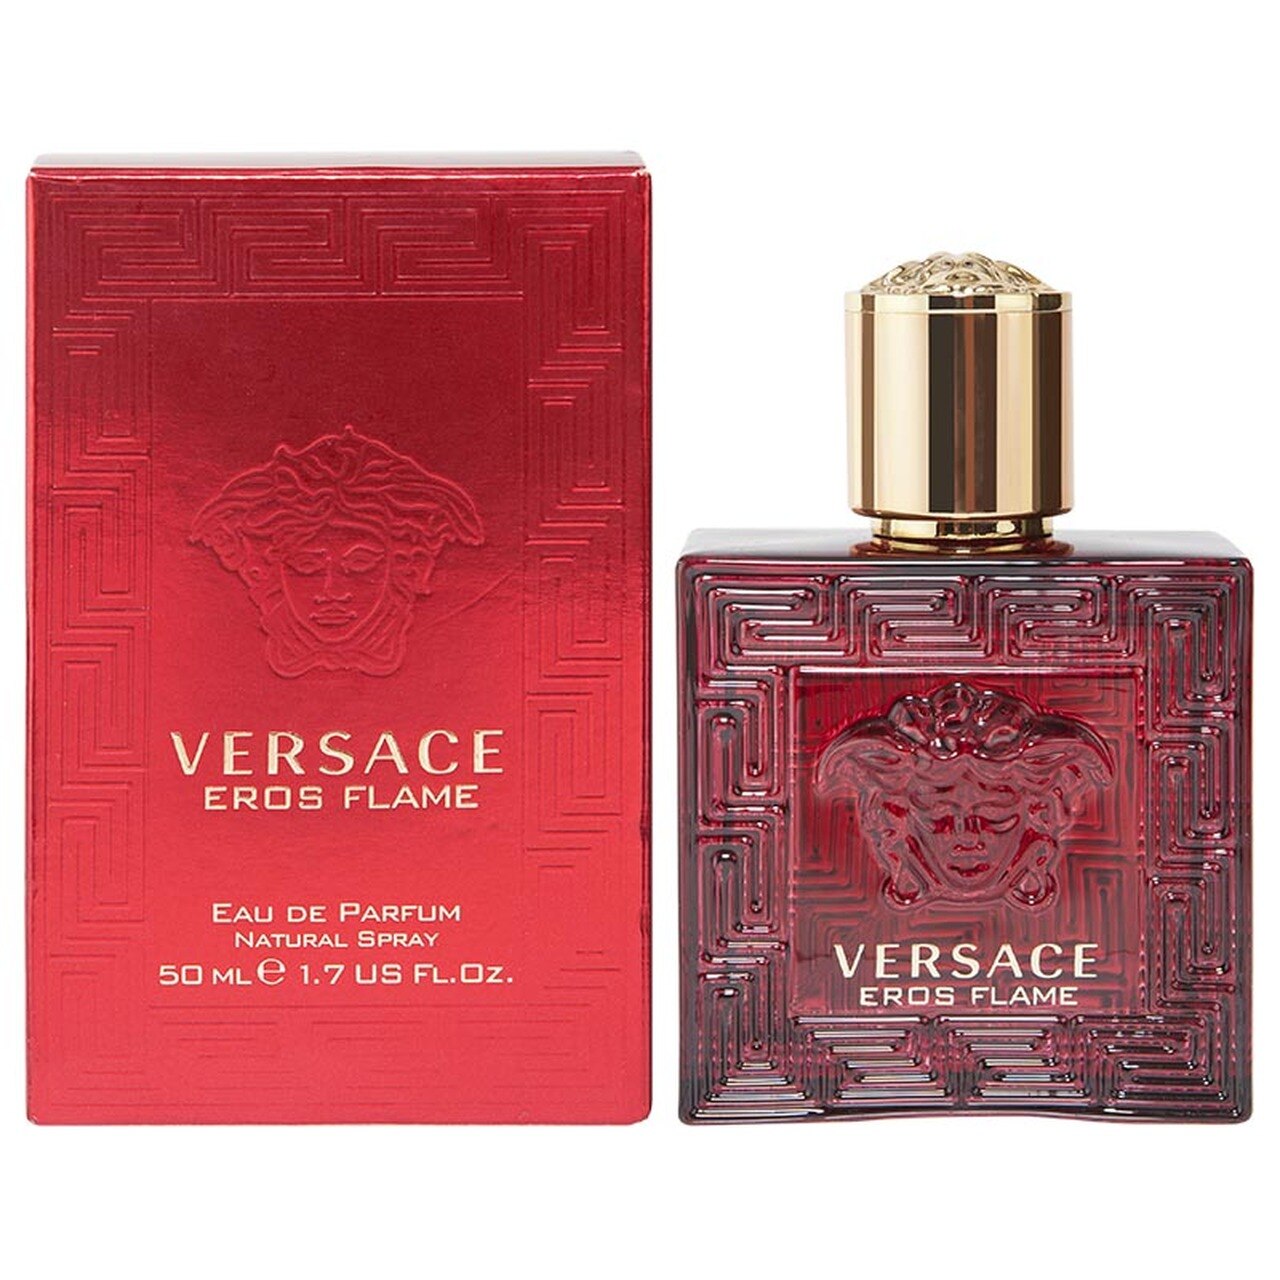 Versace Eros Flame 50ml Eau De Parfum (Blemished Box)